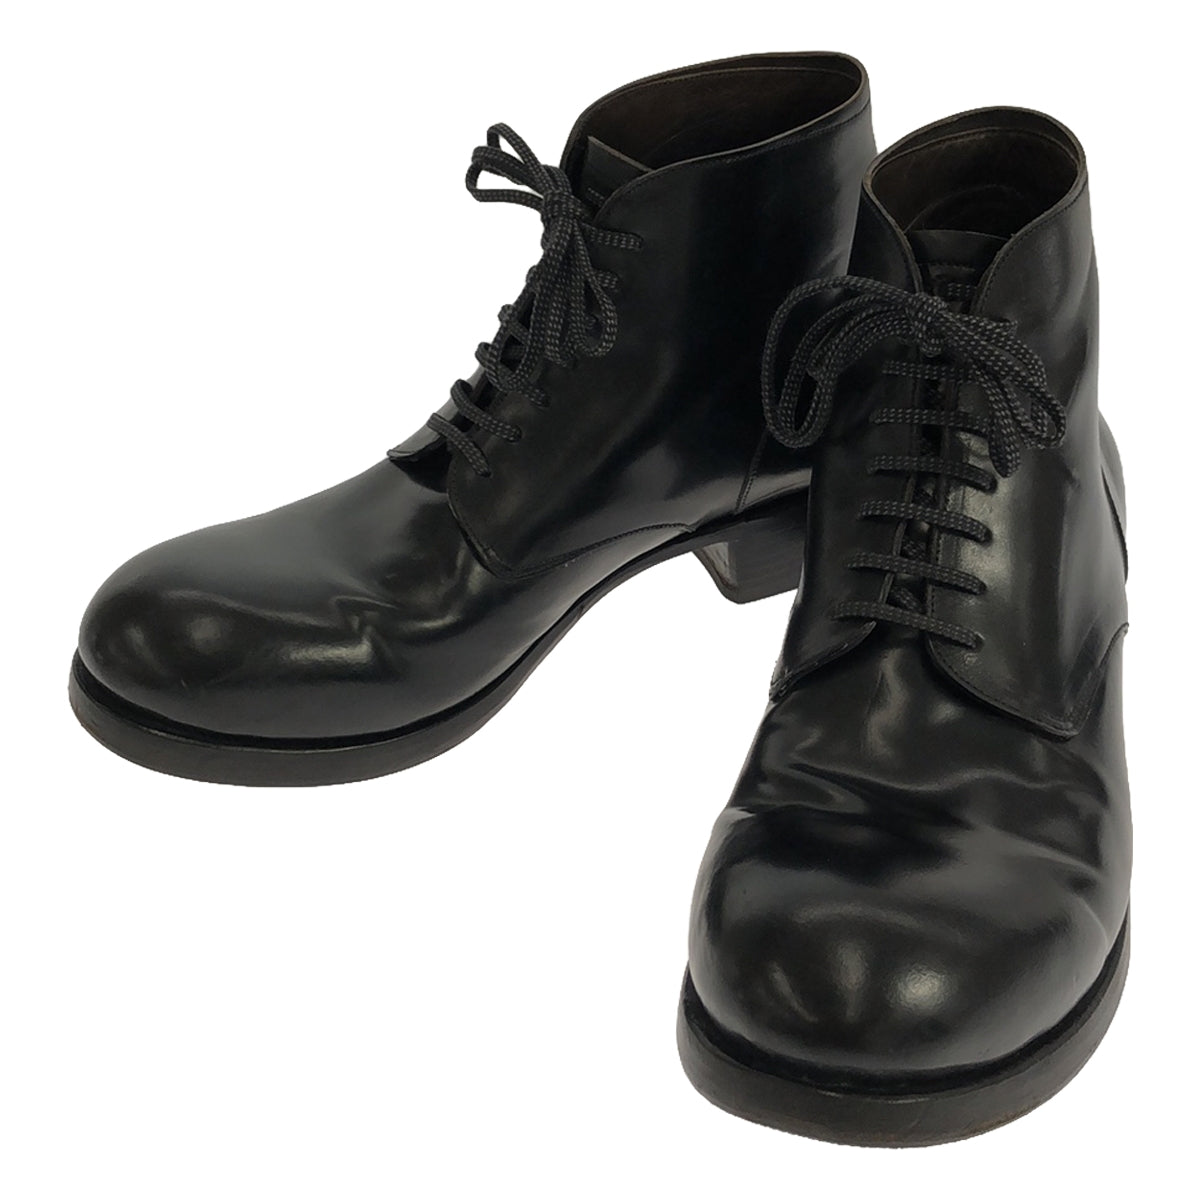 M_Moriabc / メモリア | 7hall shell cordovan leather boots / シェルコードバン レザーブー – KLD